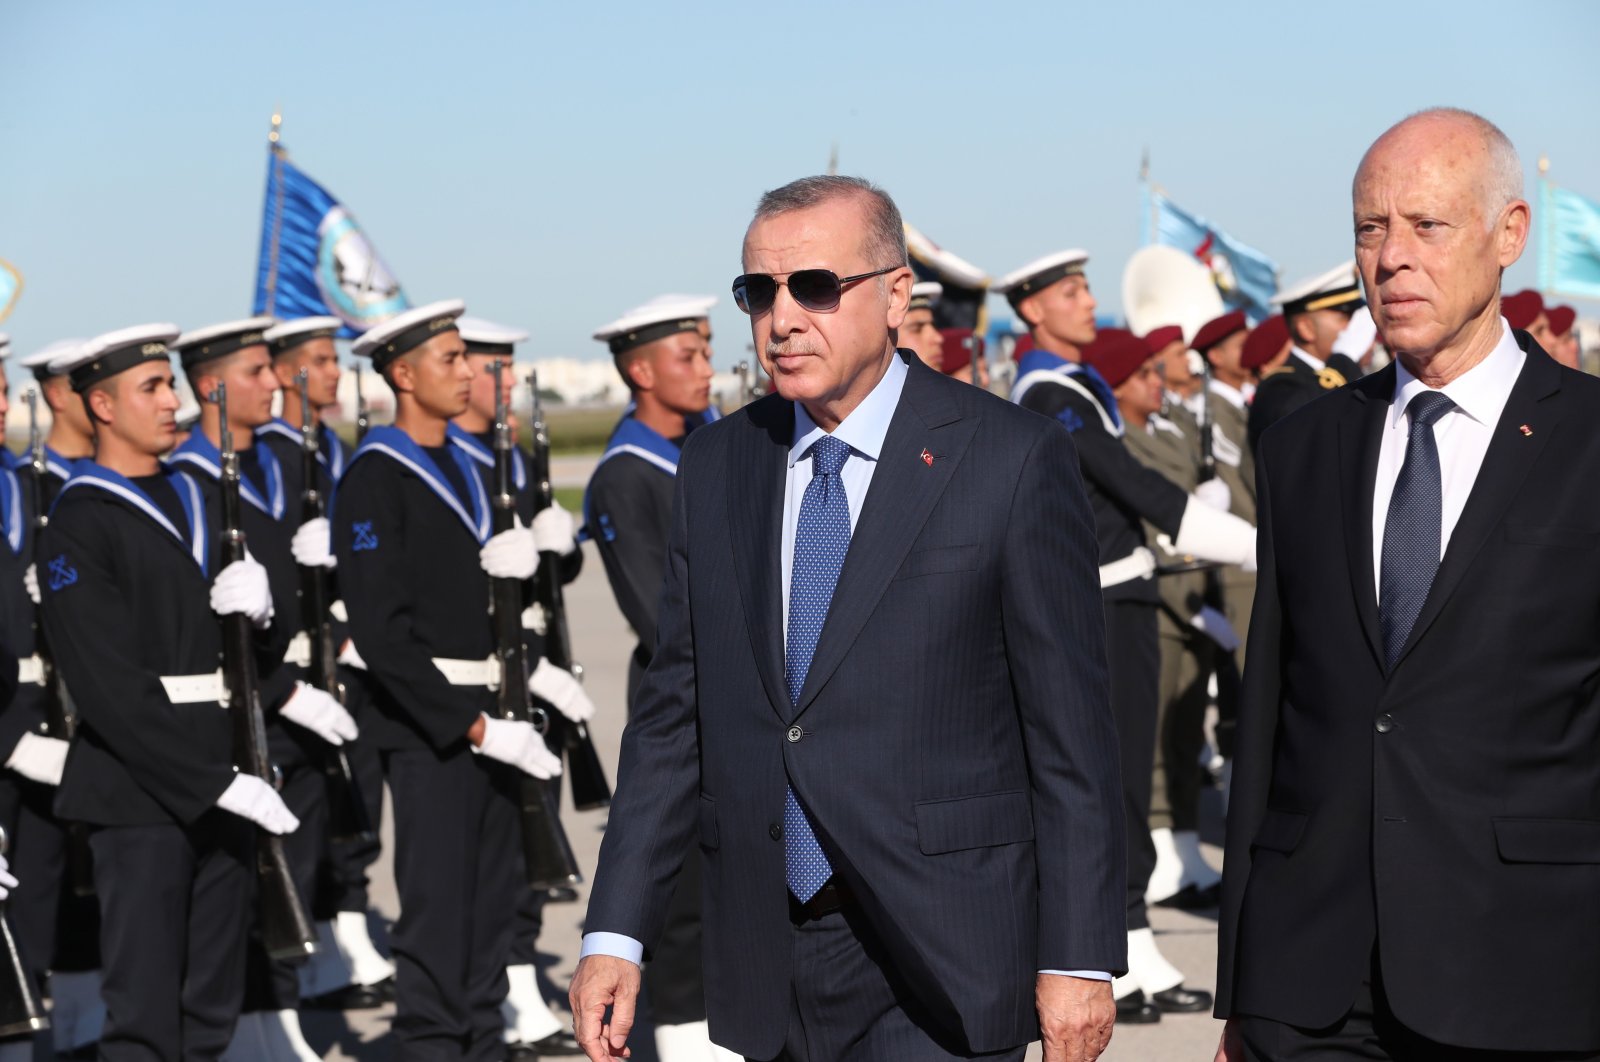 Erdoğan emphasizes democracy in conversations with